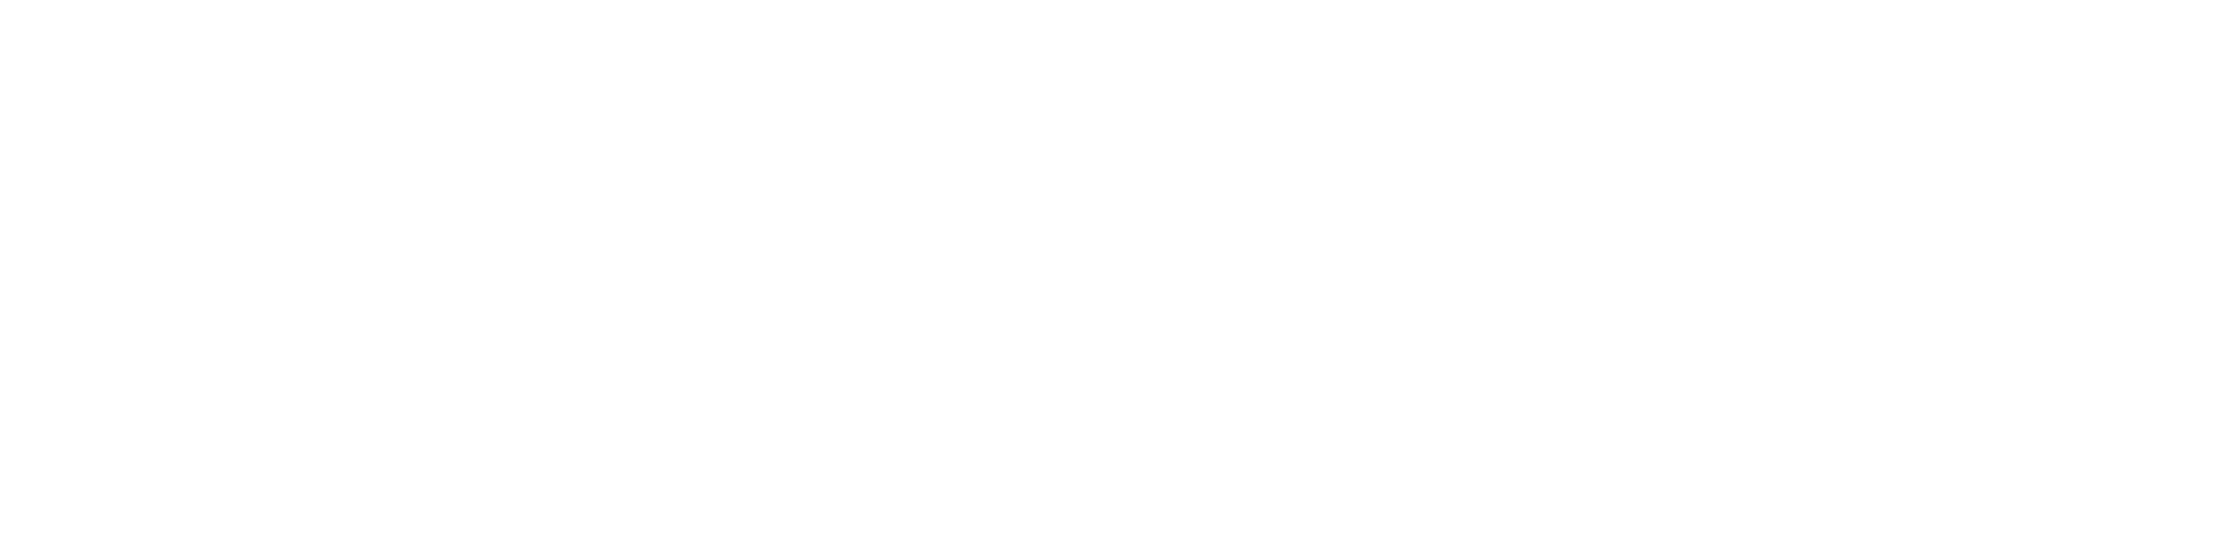 Meth-web-long-2220x540-betta-wellbeing-logo-workings-w